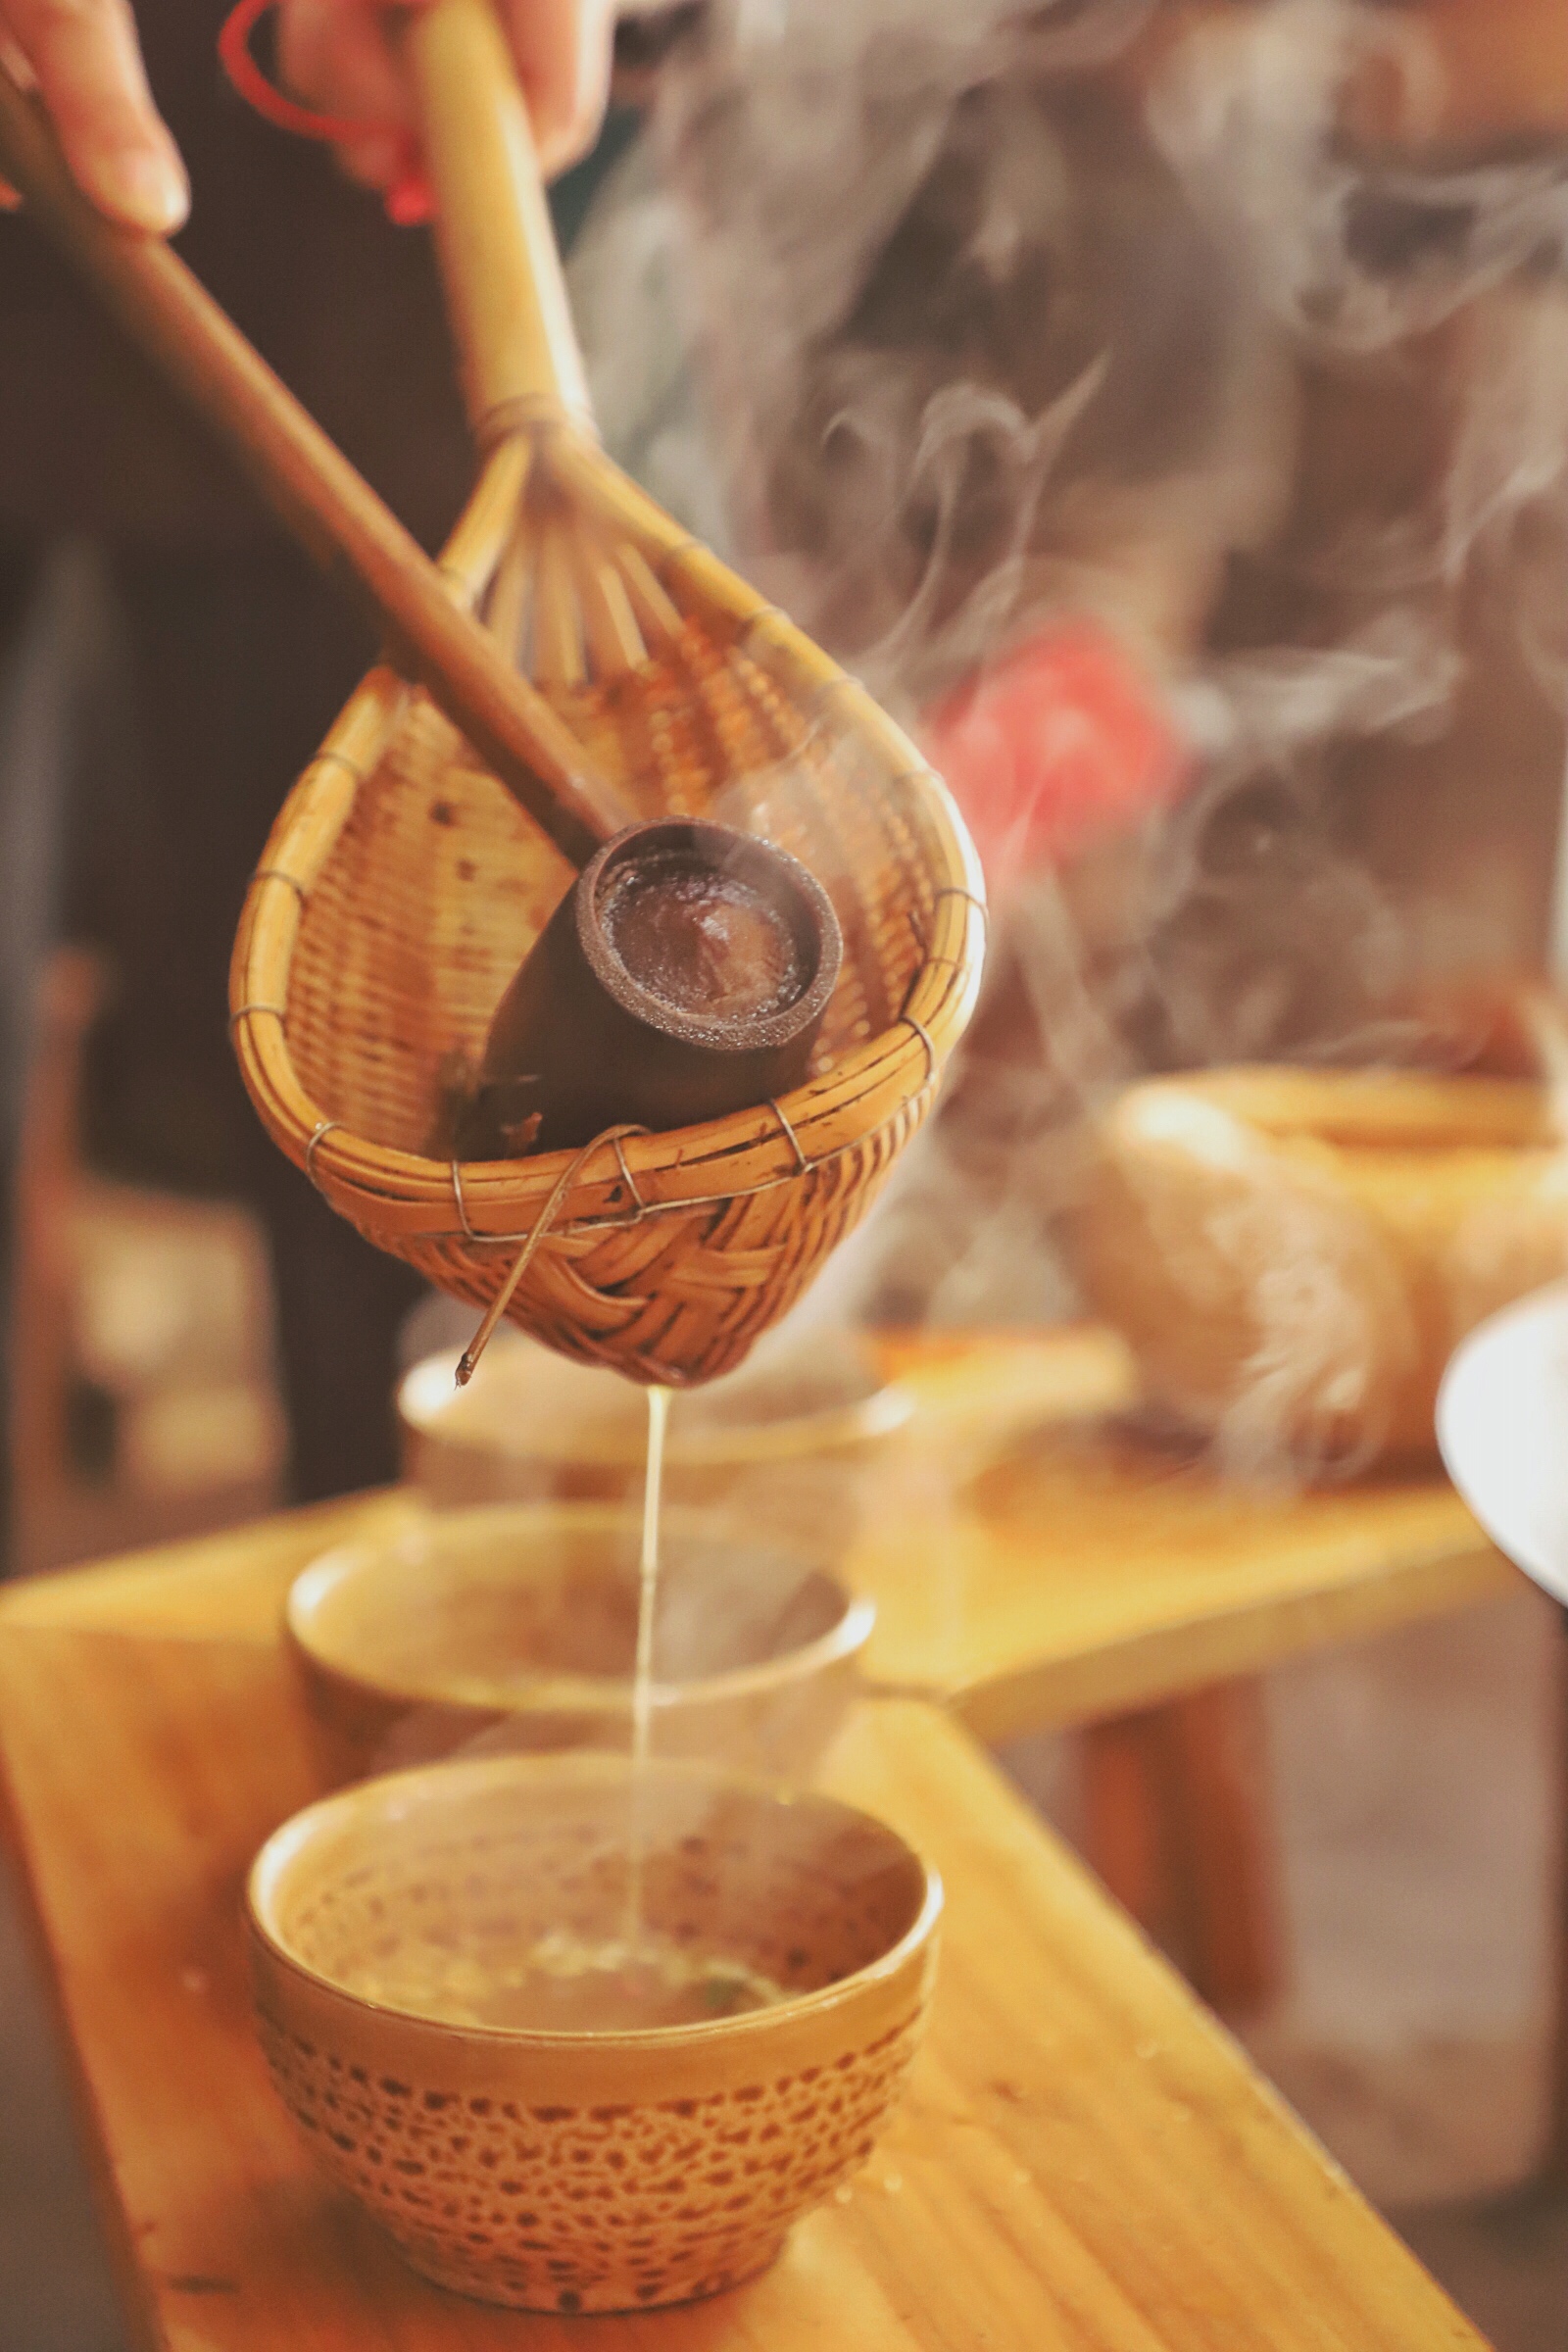 在广西唯一侗族自治县,看侗族人喝油茶,造鼓楼,建起风雨桥